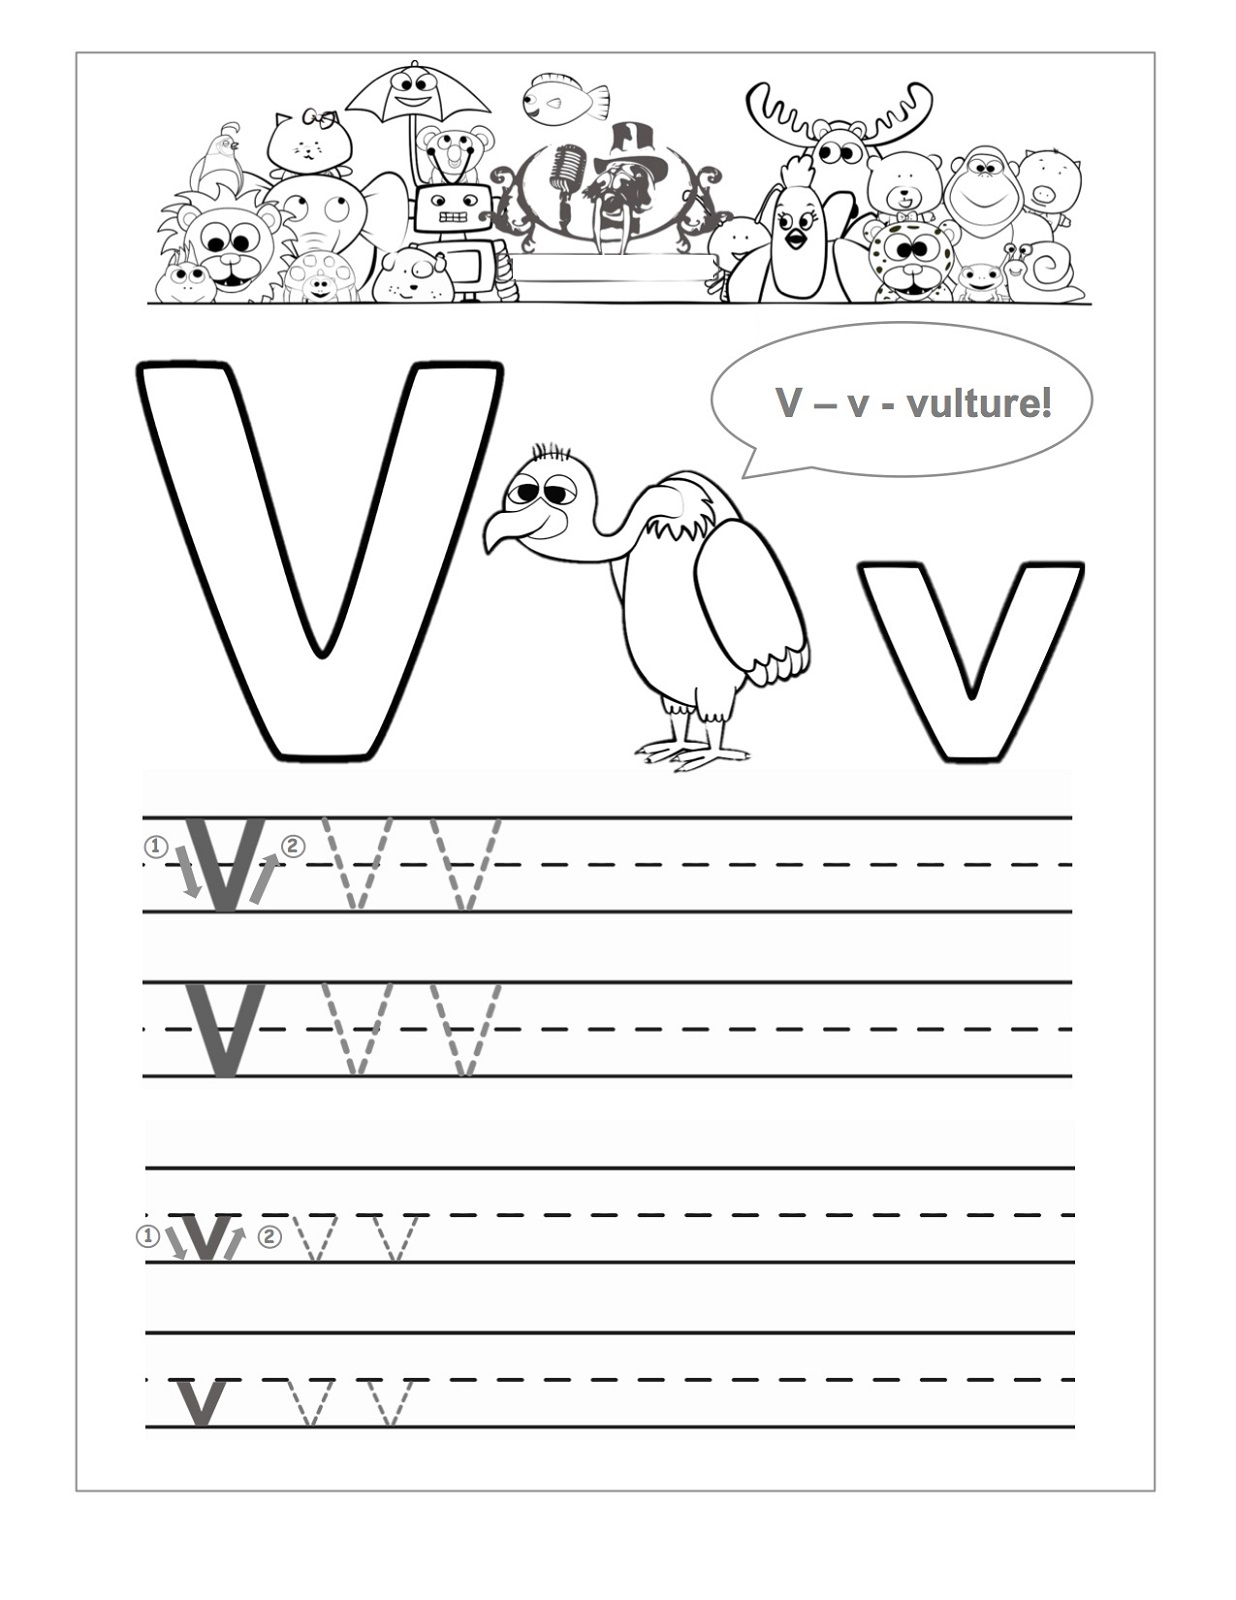 Letter V Worksheets To Print | Activity Shelter with Letter V Worksheets For Kindergarten